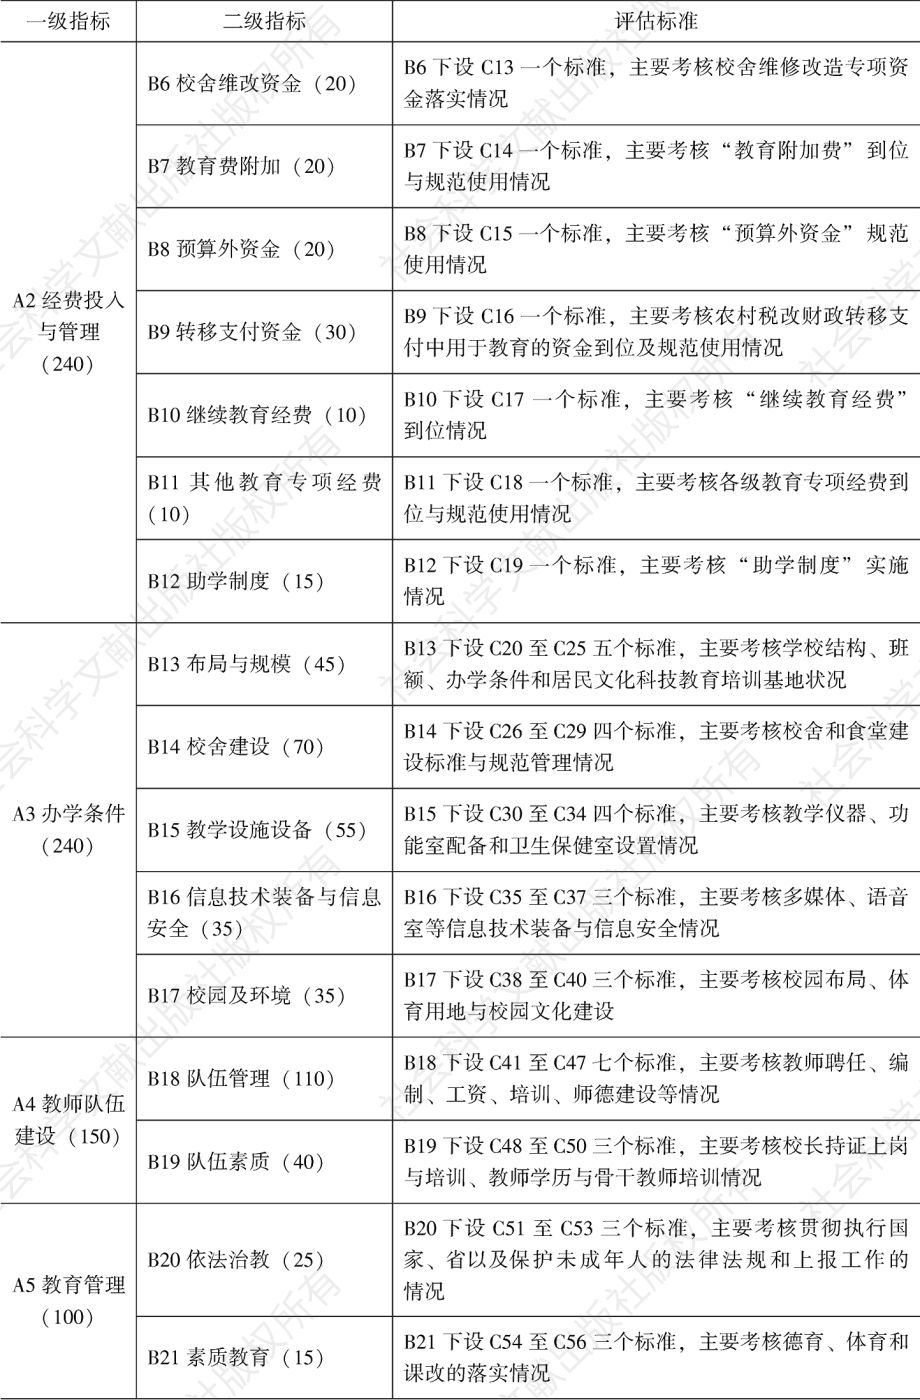 表2-3 福建省县级人民政府教育工作督导评估标准（2007年修订）概况-续表1